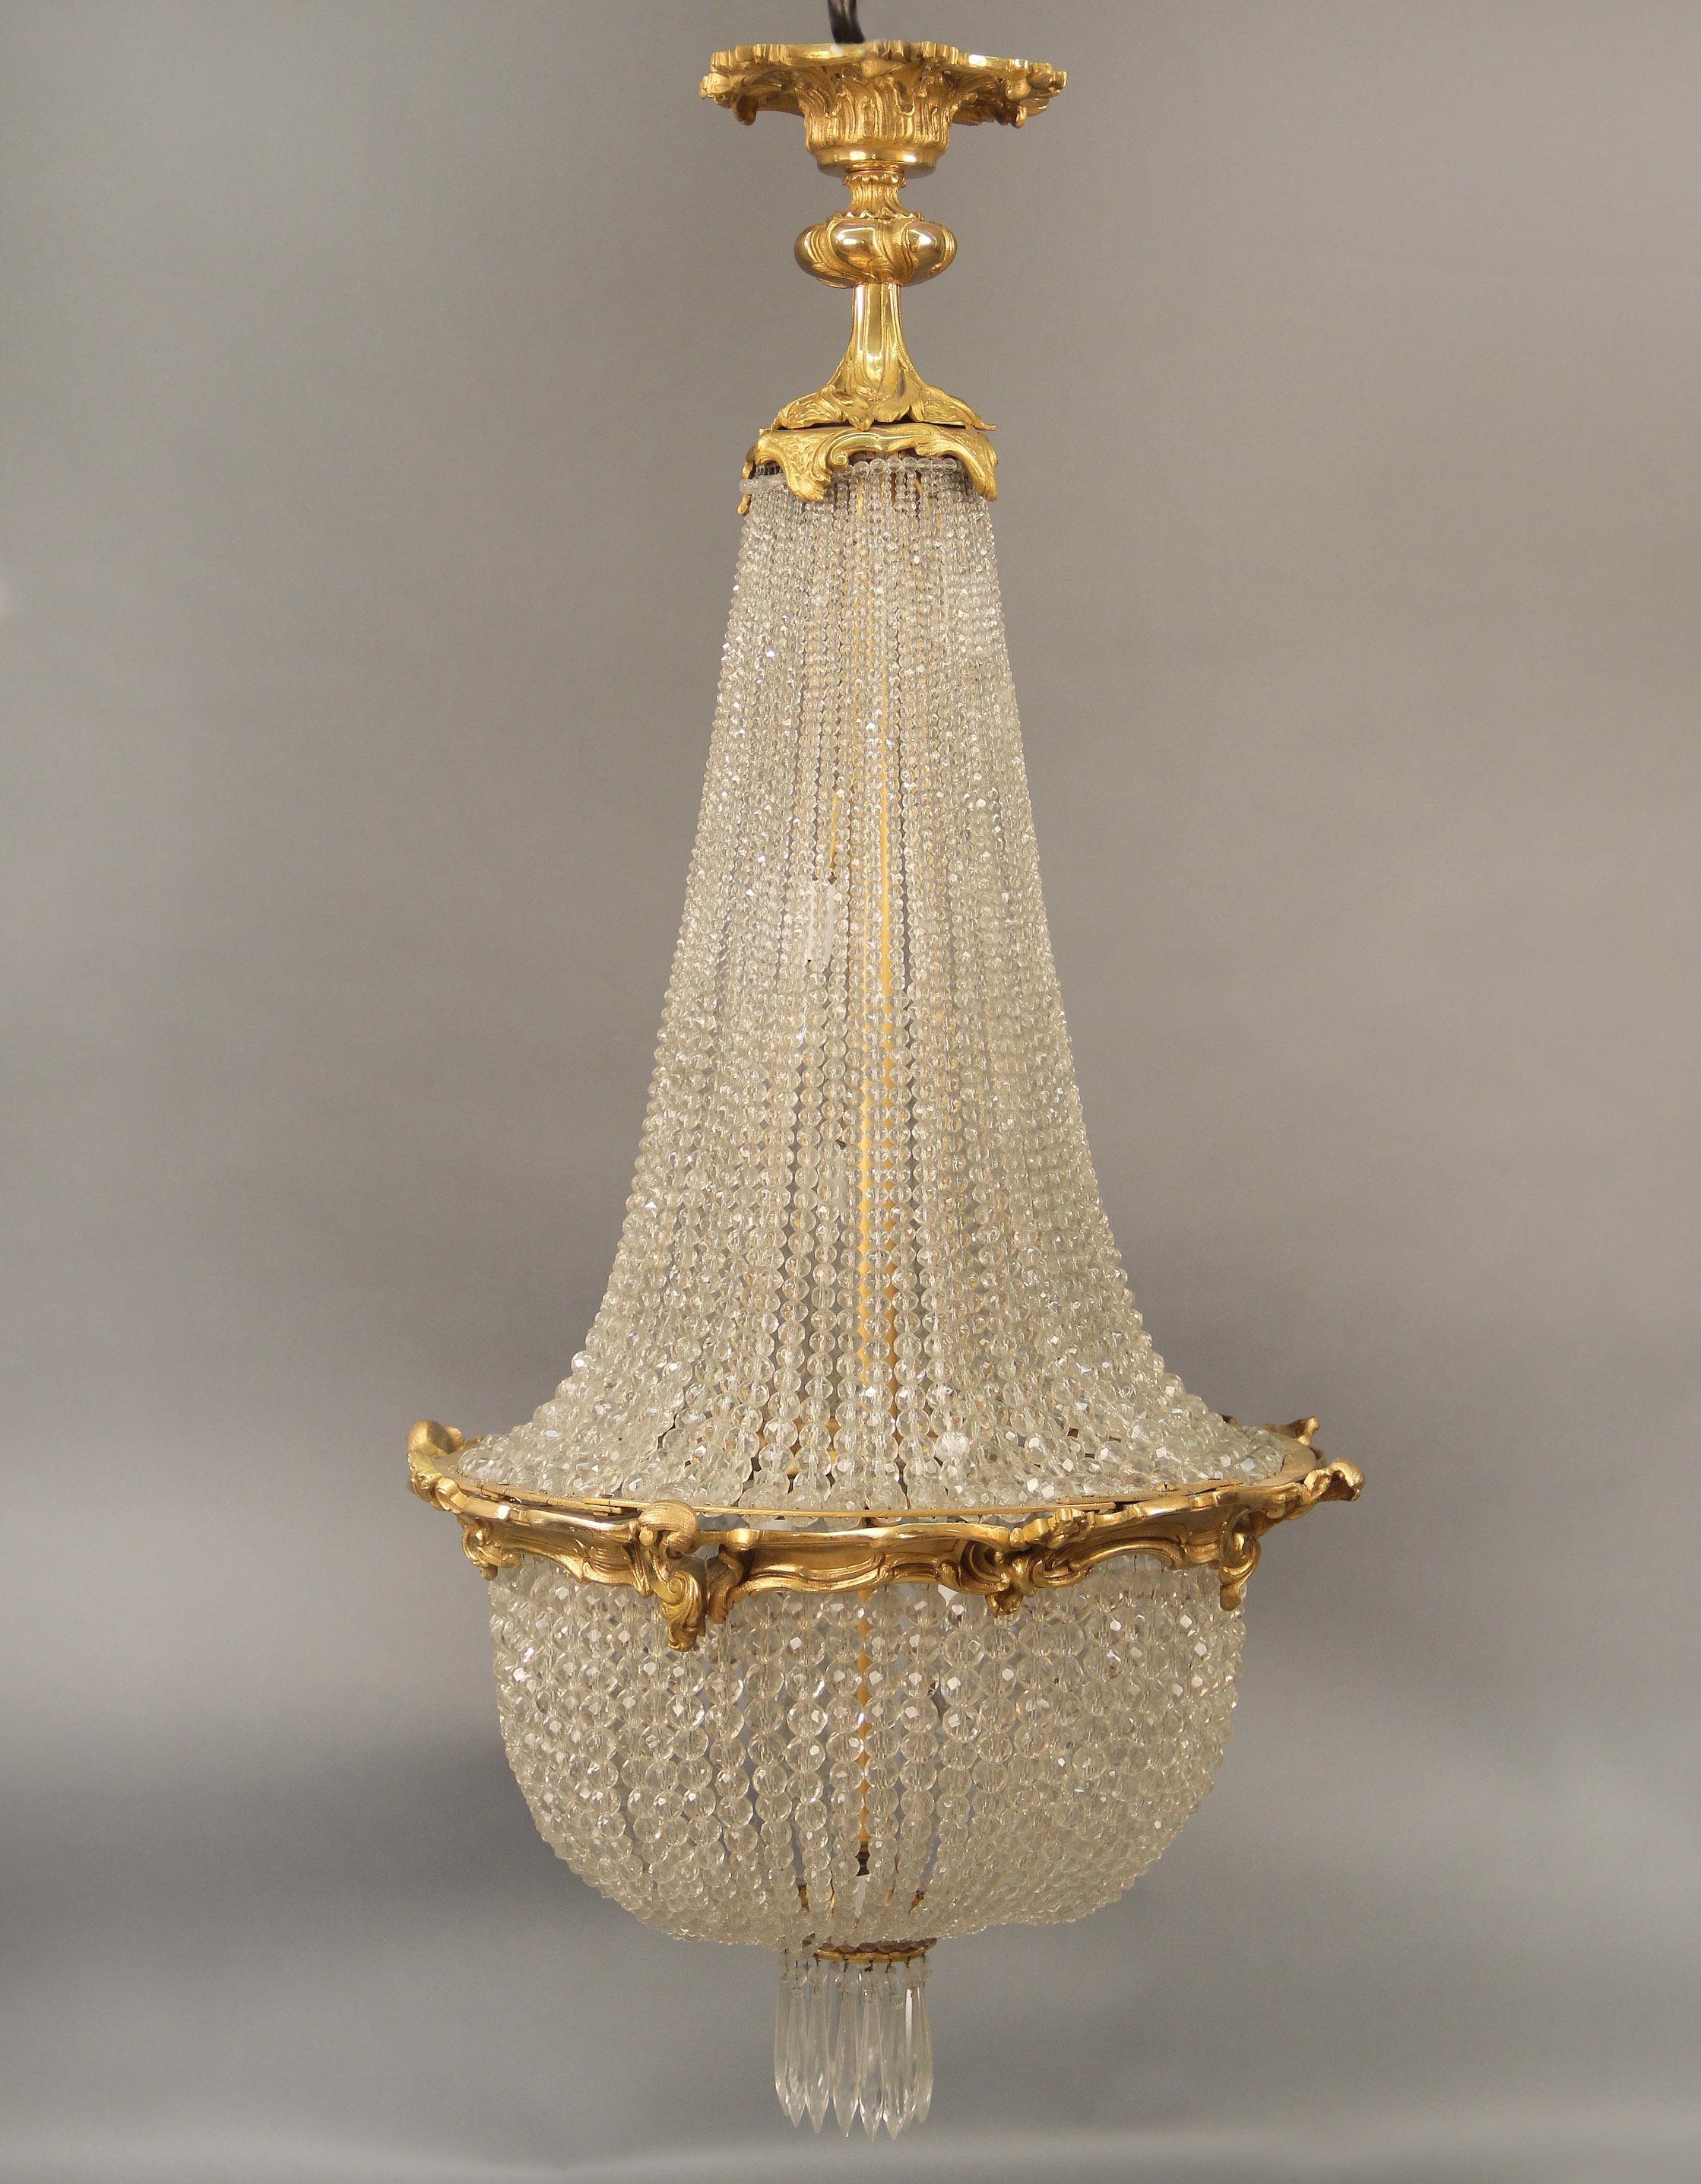 Lustre à sept lumières en bronze doré et cristal de la fin du XIXe siècle

La grande couronne en bronze avec des perles fluides qui descendent vers un panier avec des cristaux en goutte d'eau, sept lumières intérieures en gradins.